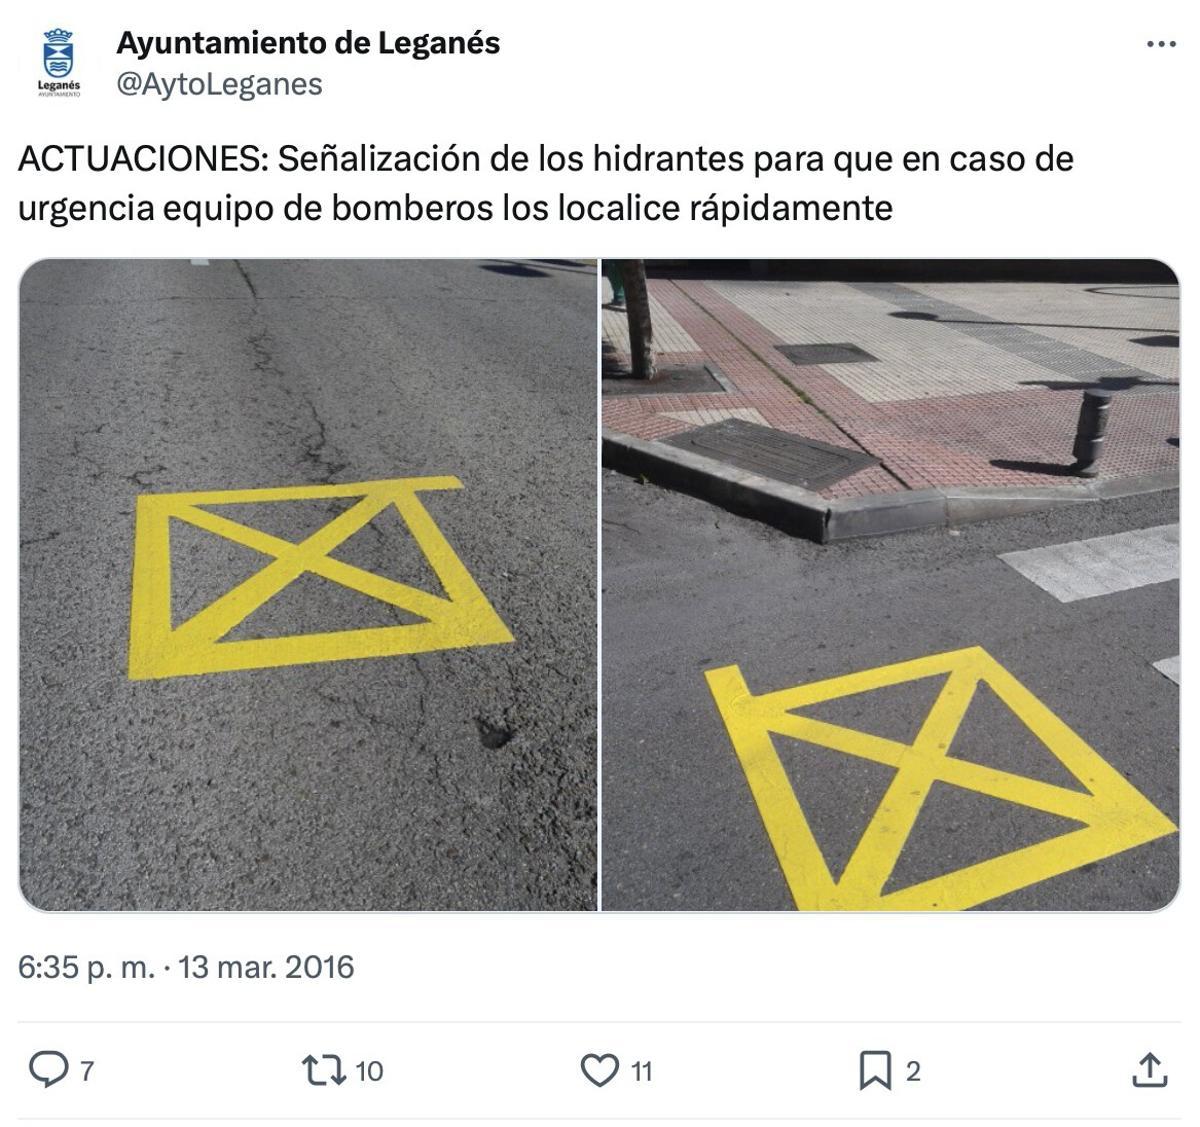 Tuit del ayuntamiento de Leganés